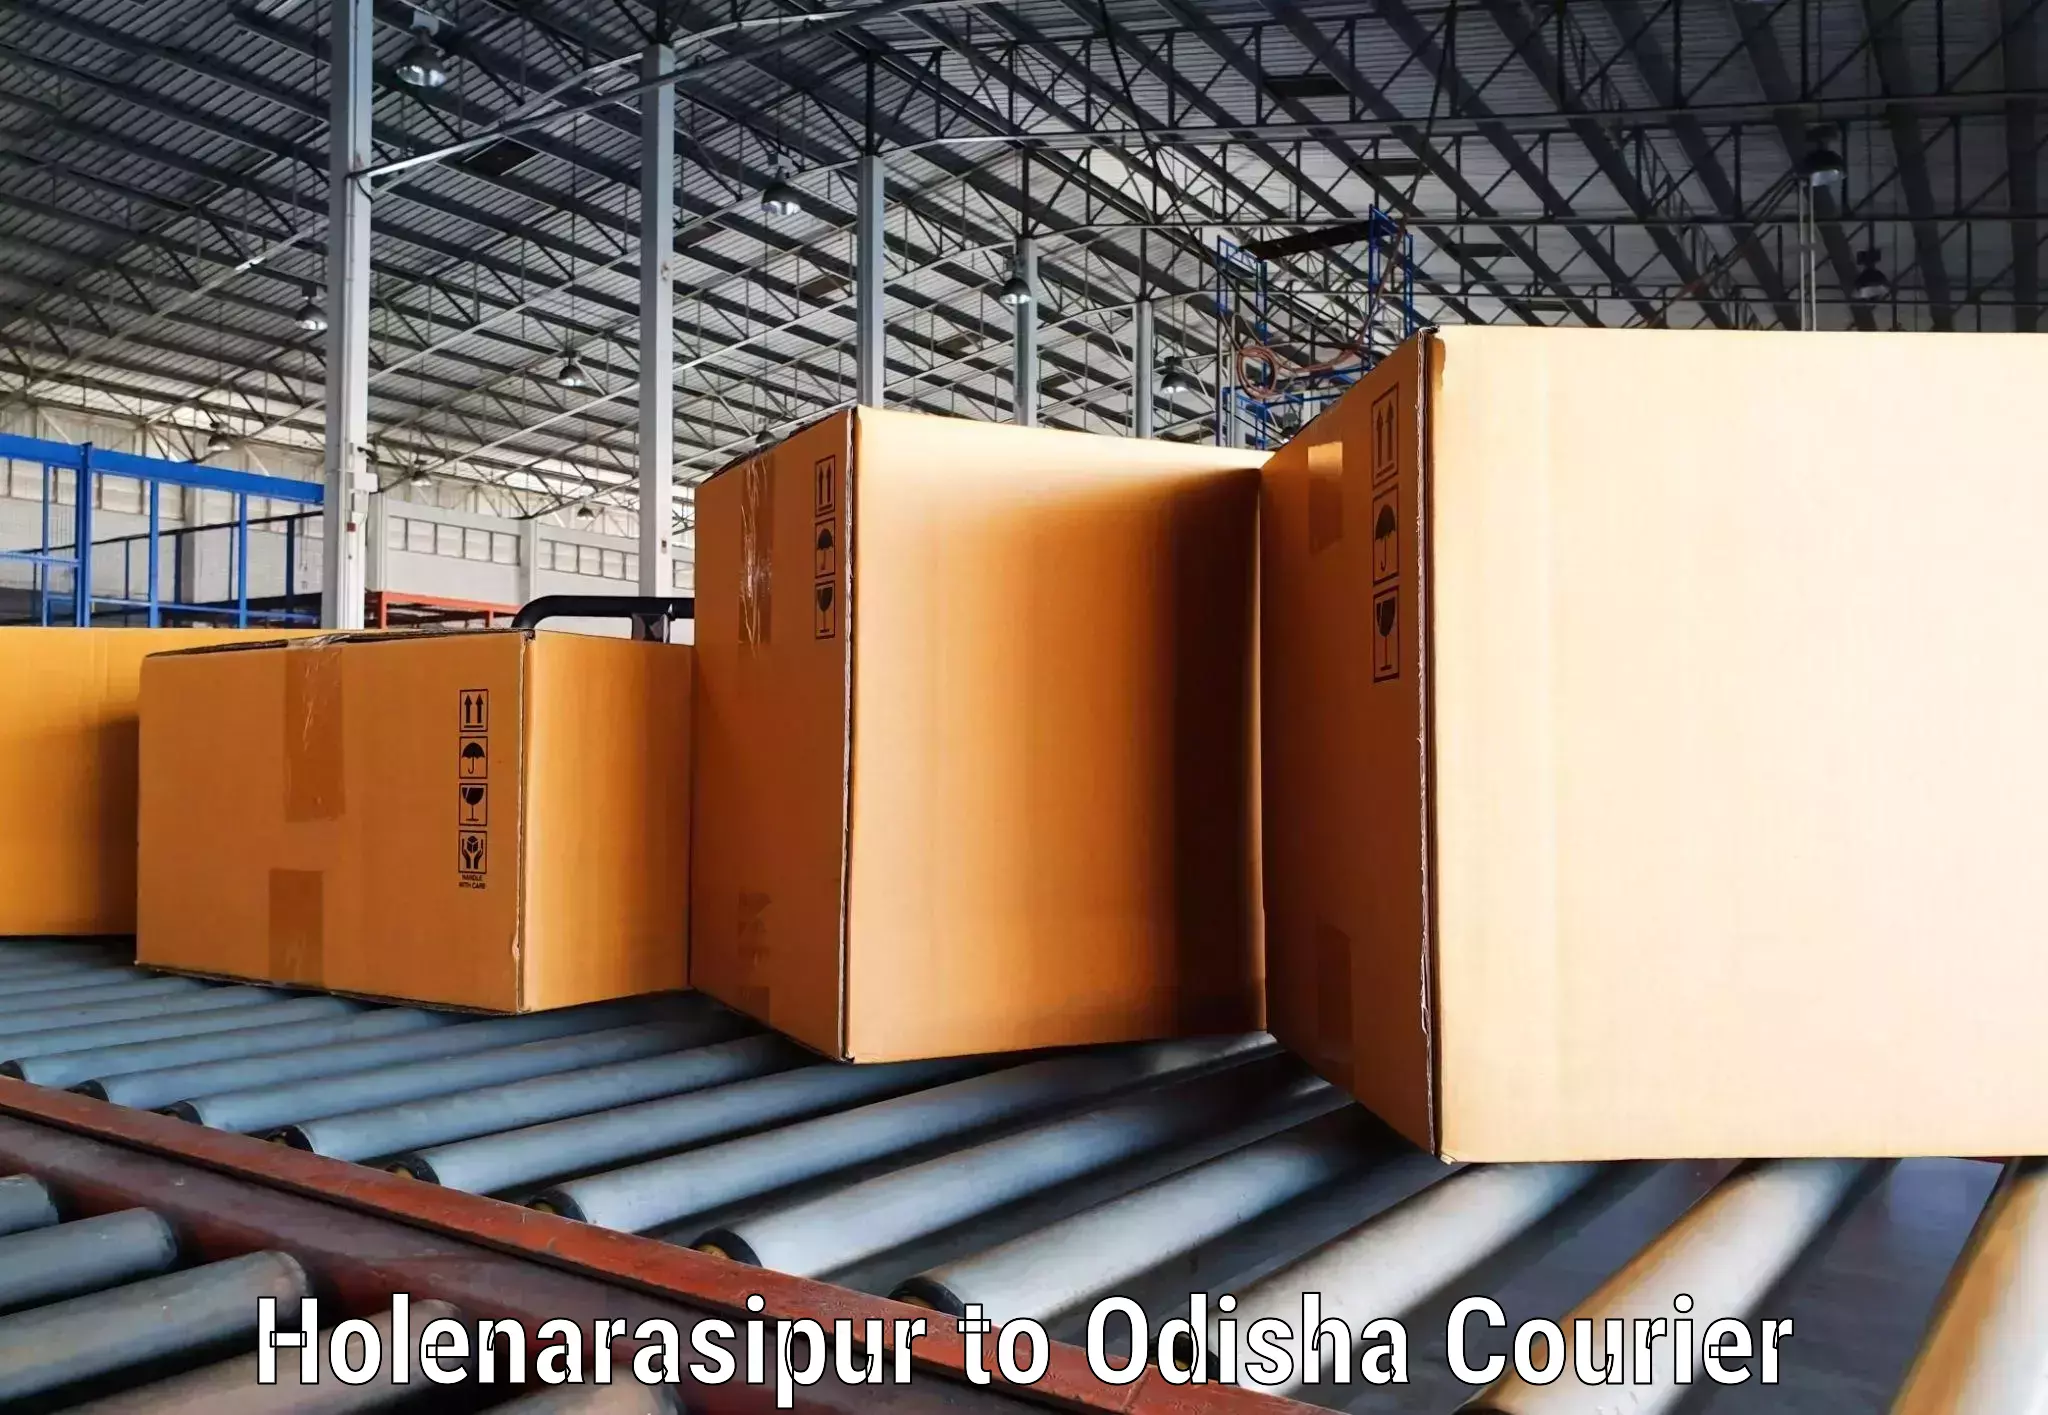 Digital courier platforms Holenarasipur to Mohana